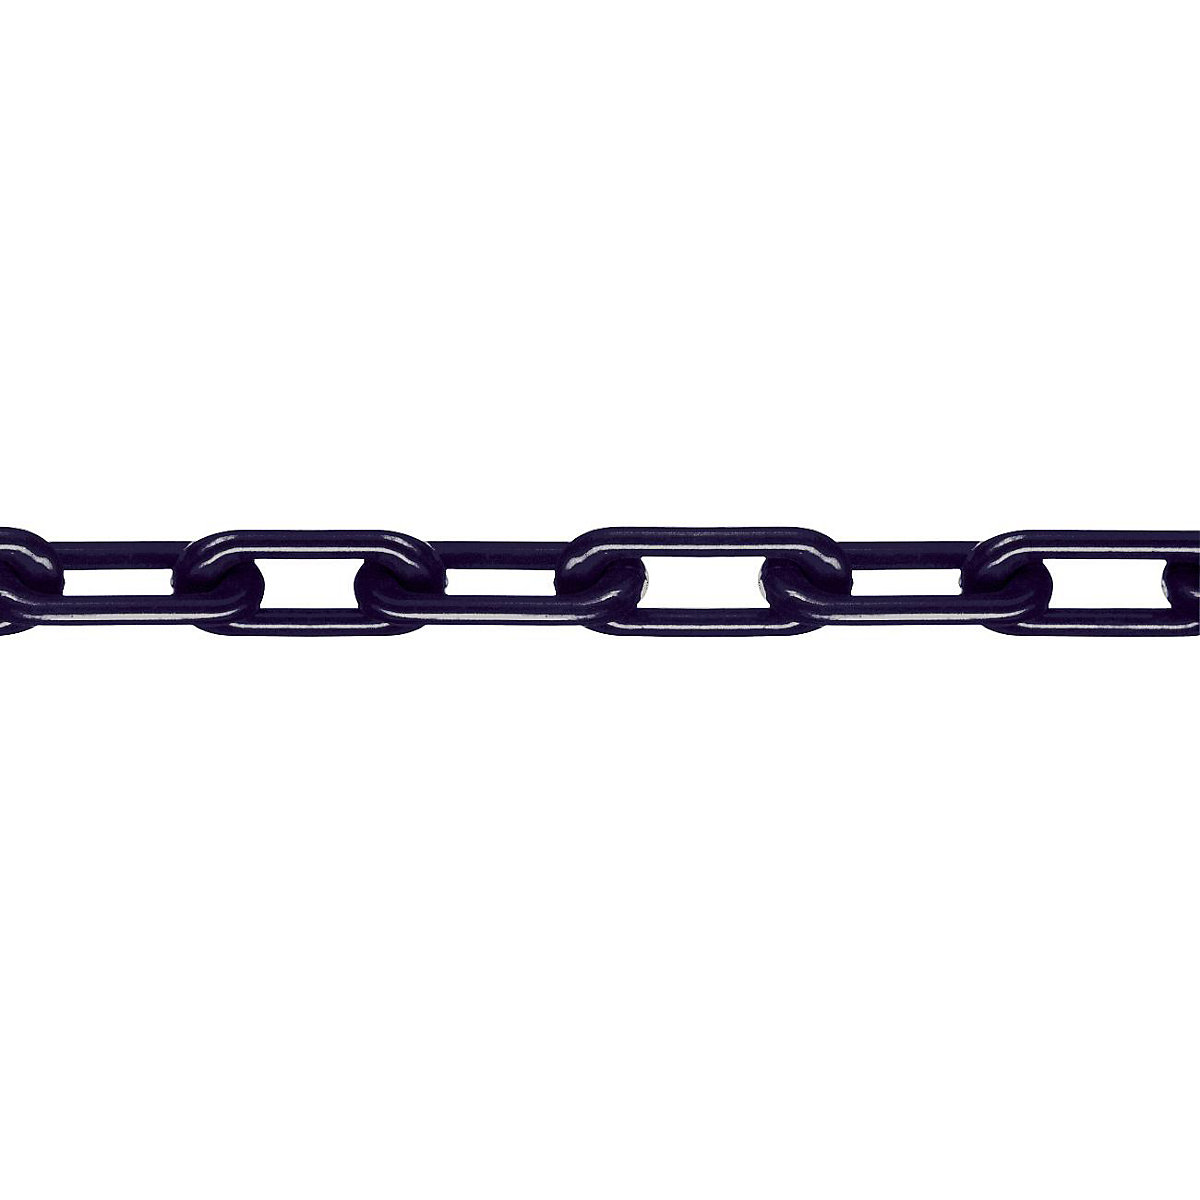 Łańcuch z nylonu, jakość MNK 8, dł. wiązki 25 m, czarny, od 4 szt.-2